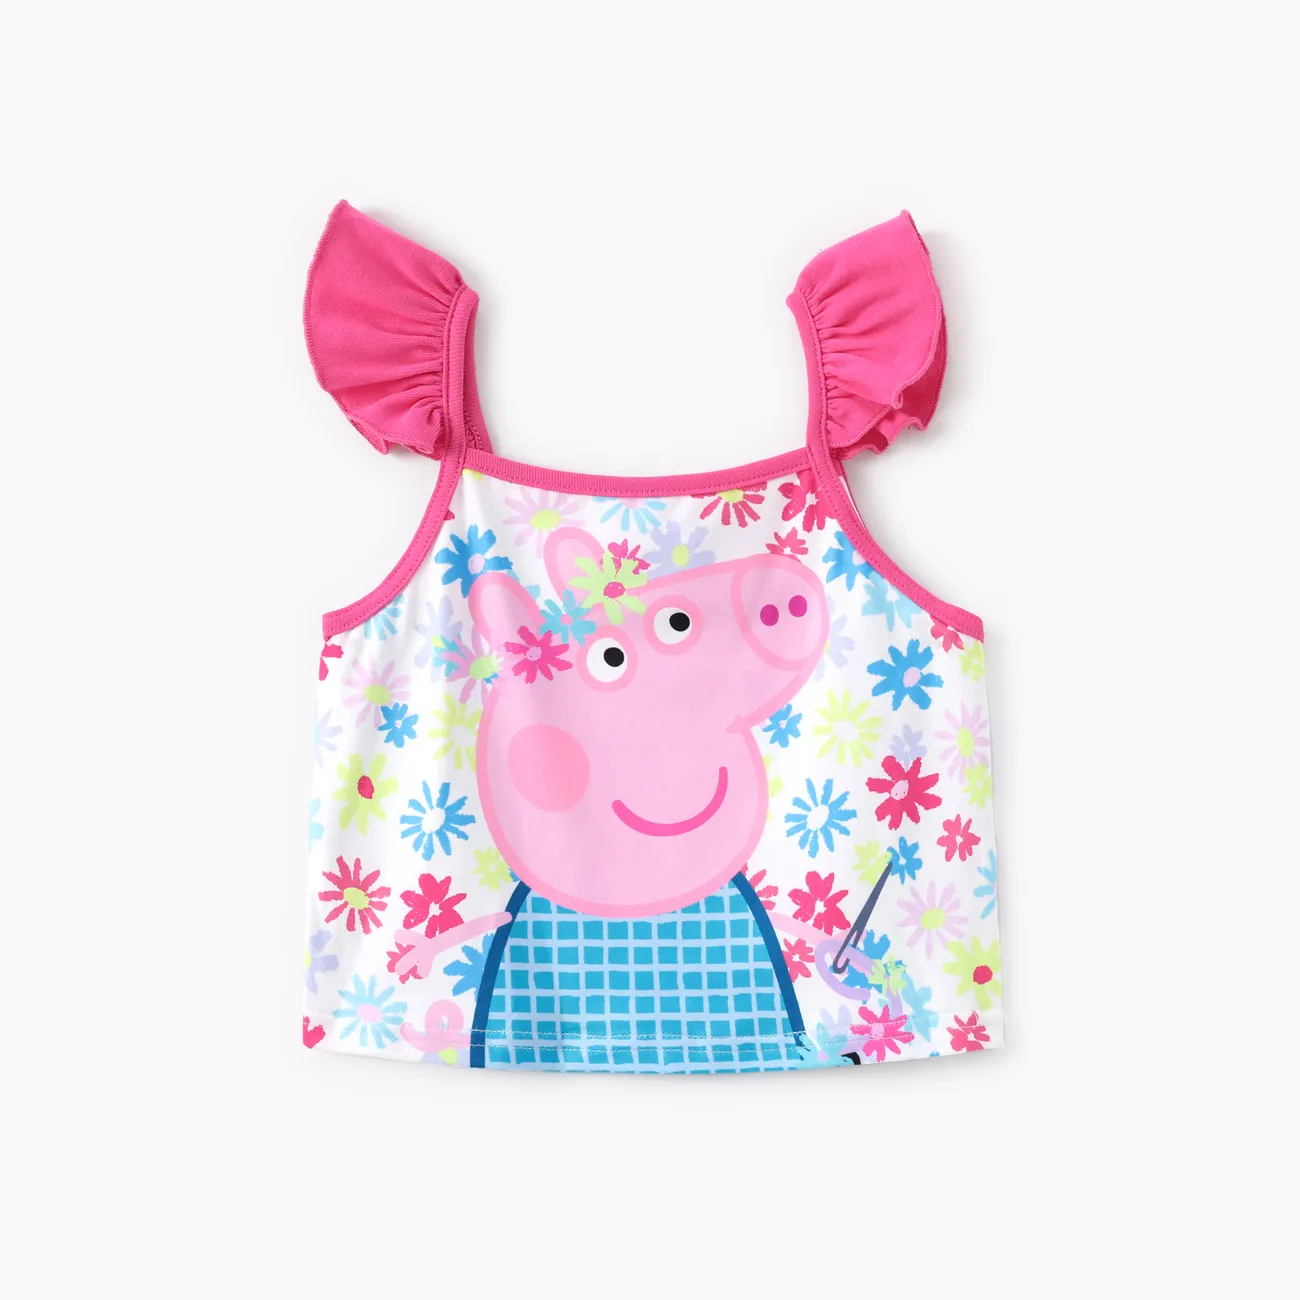 Peppa Pig Toddler Girls 2pcs Floral Character Print Flutter-sleeve Top with Overalls Denim Pocket Dress Multi-color big image 1